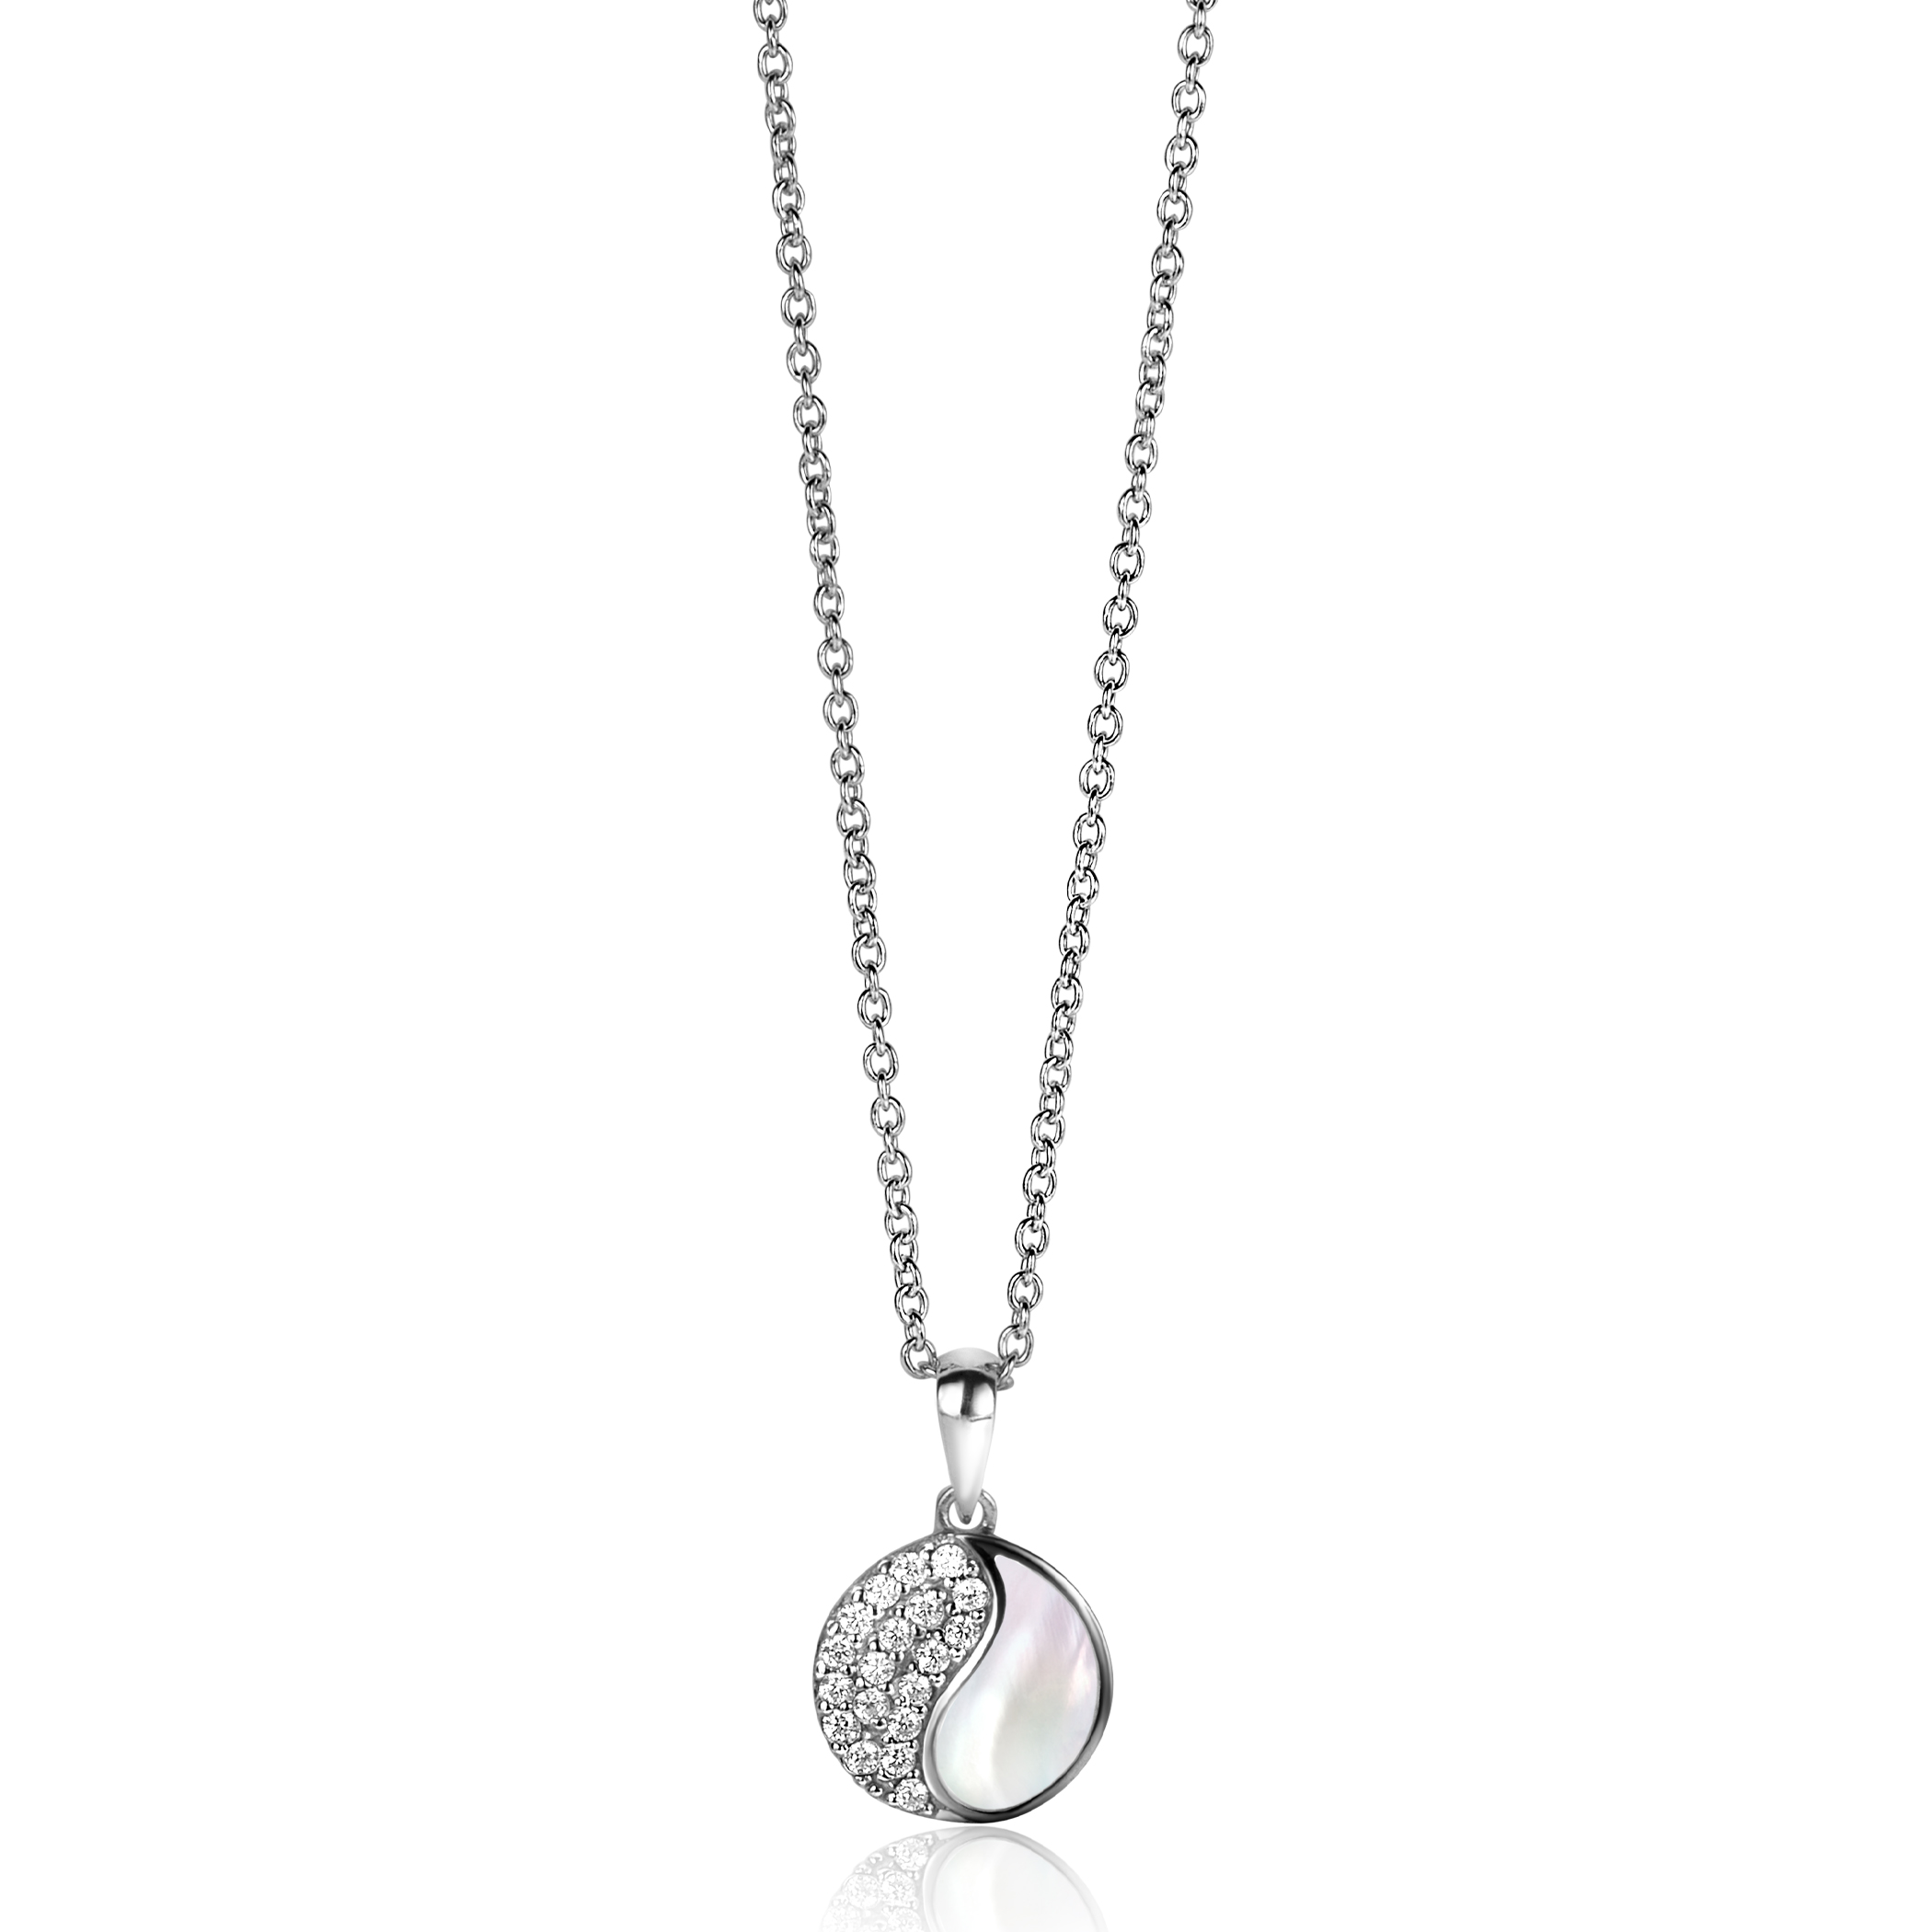 18mm ZINZI zilveren Yin Yang hanger rond, bezet met parelmoer en witte zirconia's. Yin Yang staat symbool voor: balans, harmonie, dynamiek en verbondenheid ZIH2423 (zonder collier)